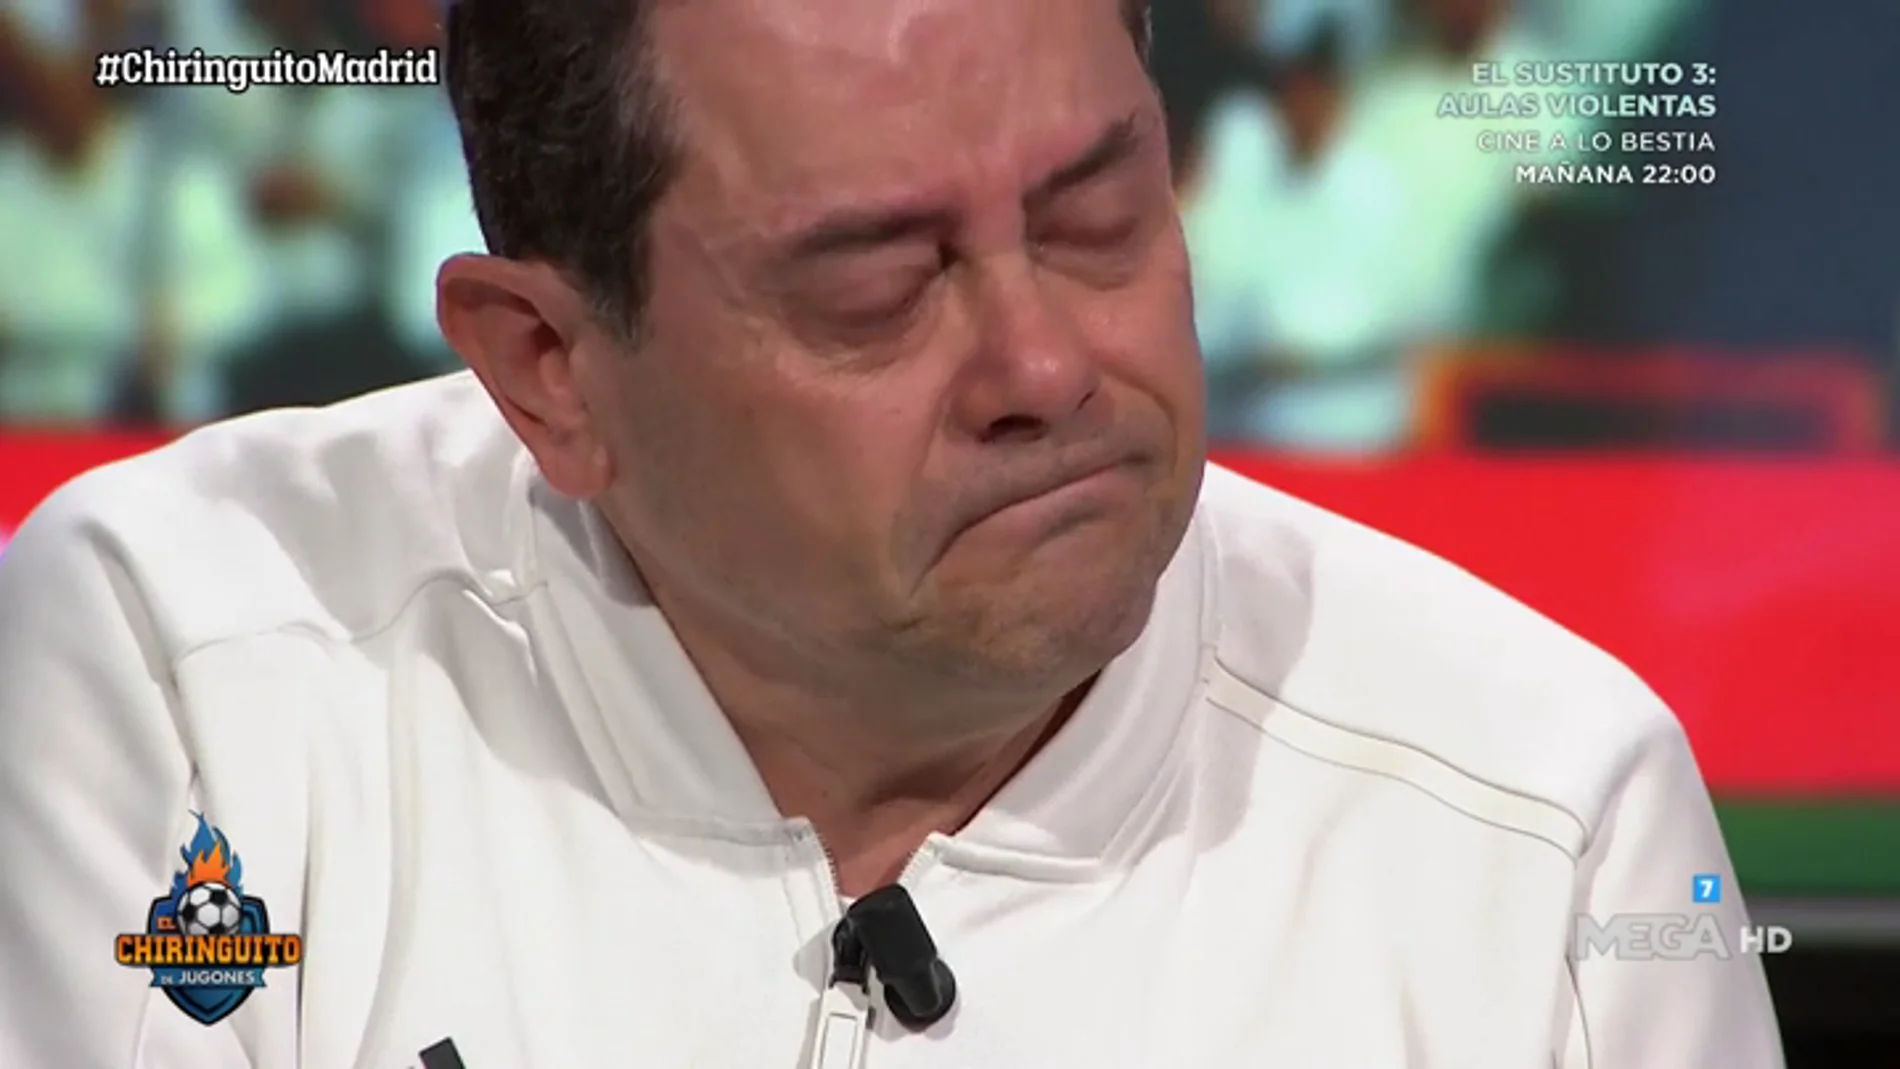 Roncero rompe a llorar tras la derrota del Madrid pensando en su hijo Marcos